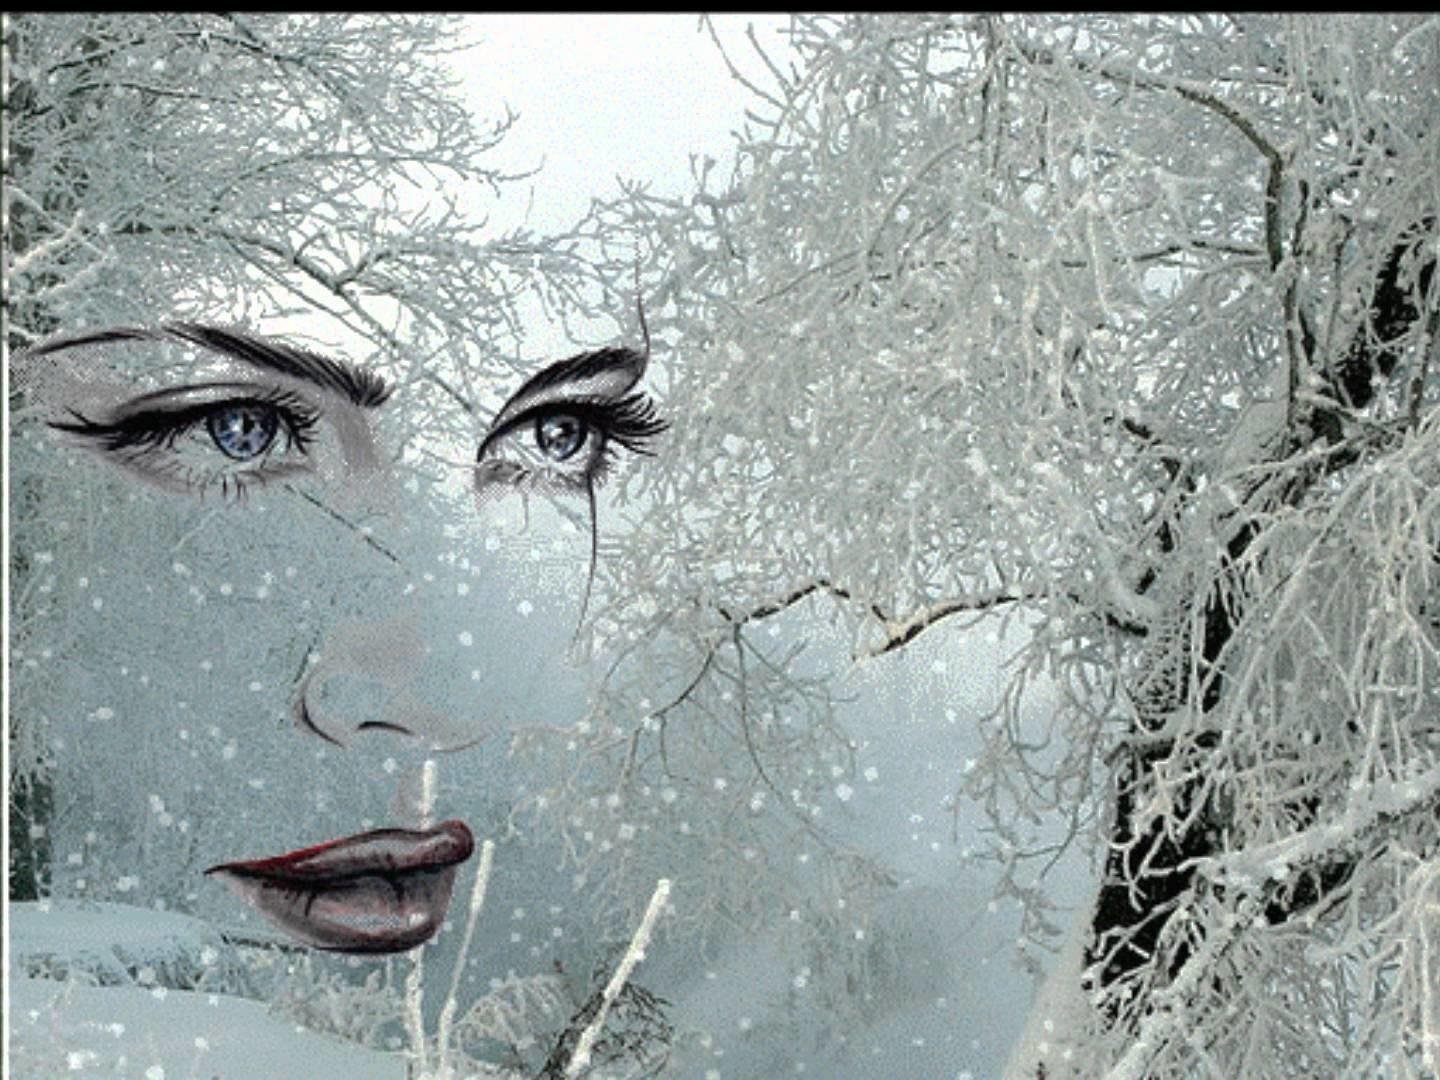 Думаю ей холодно. Женщина в метель. Весенняя метель. Снег на ресницах. Женщина вьюга.